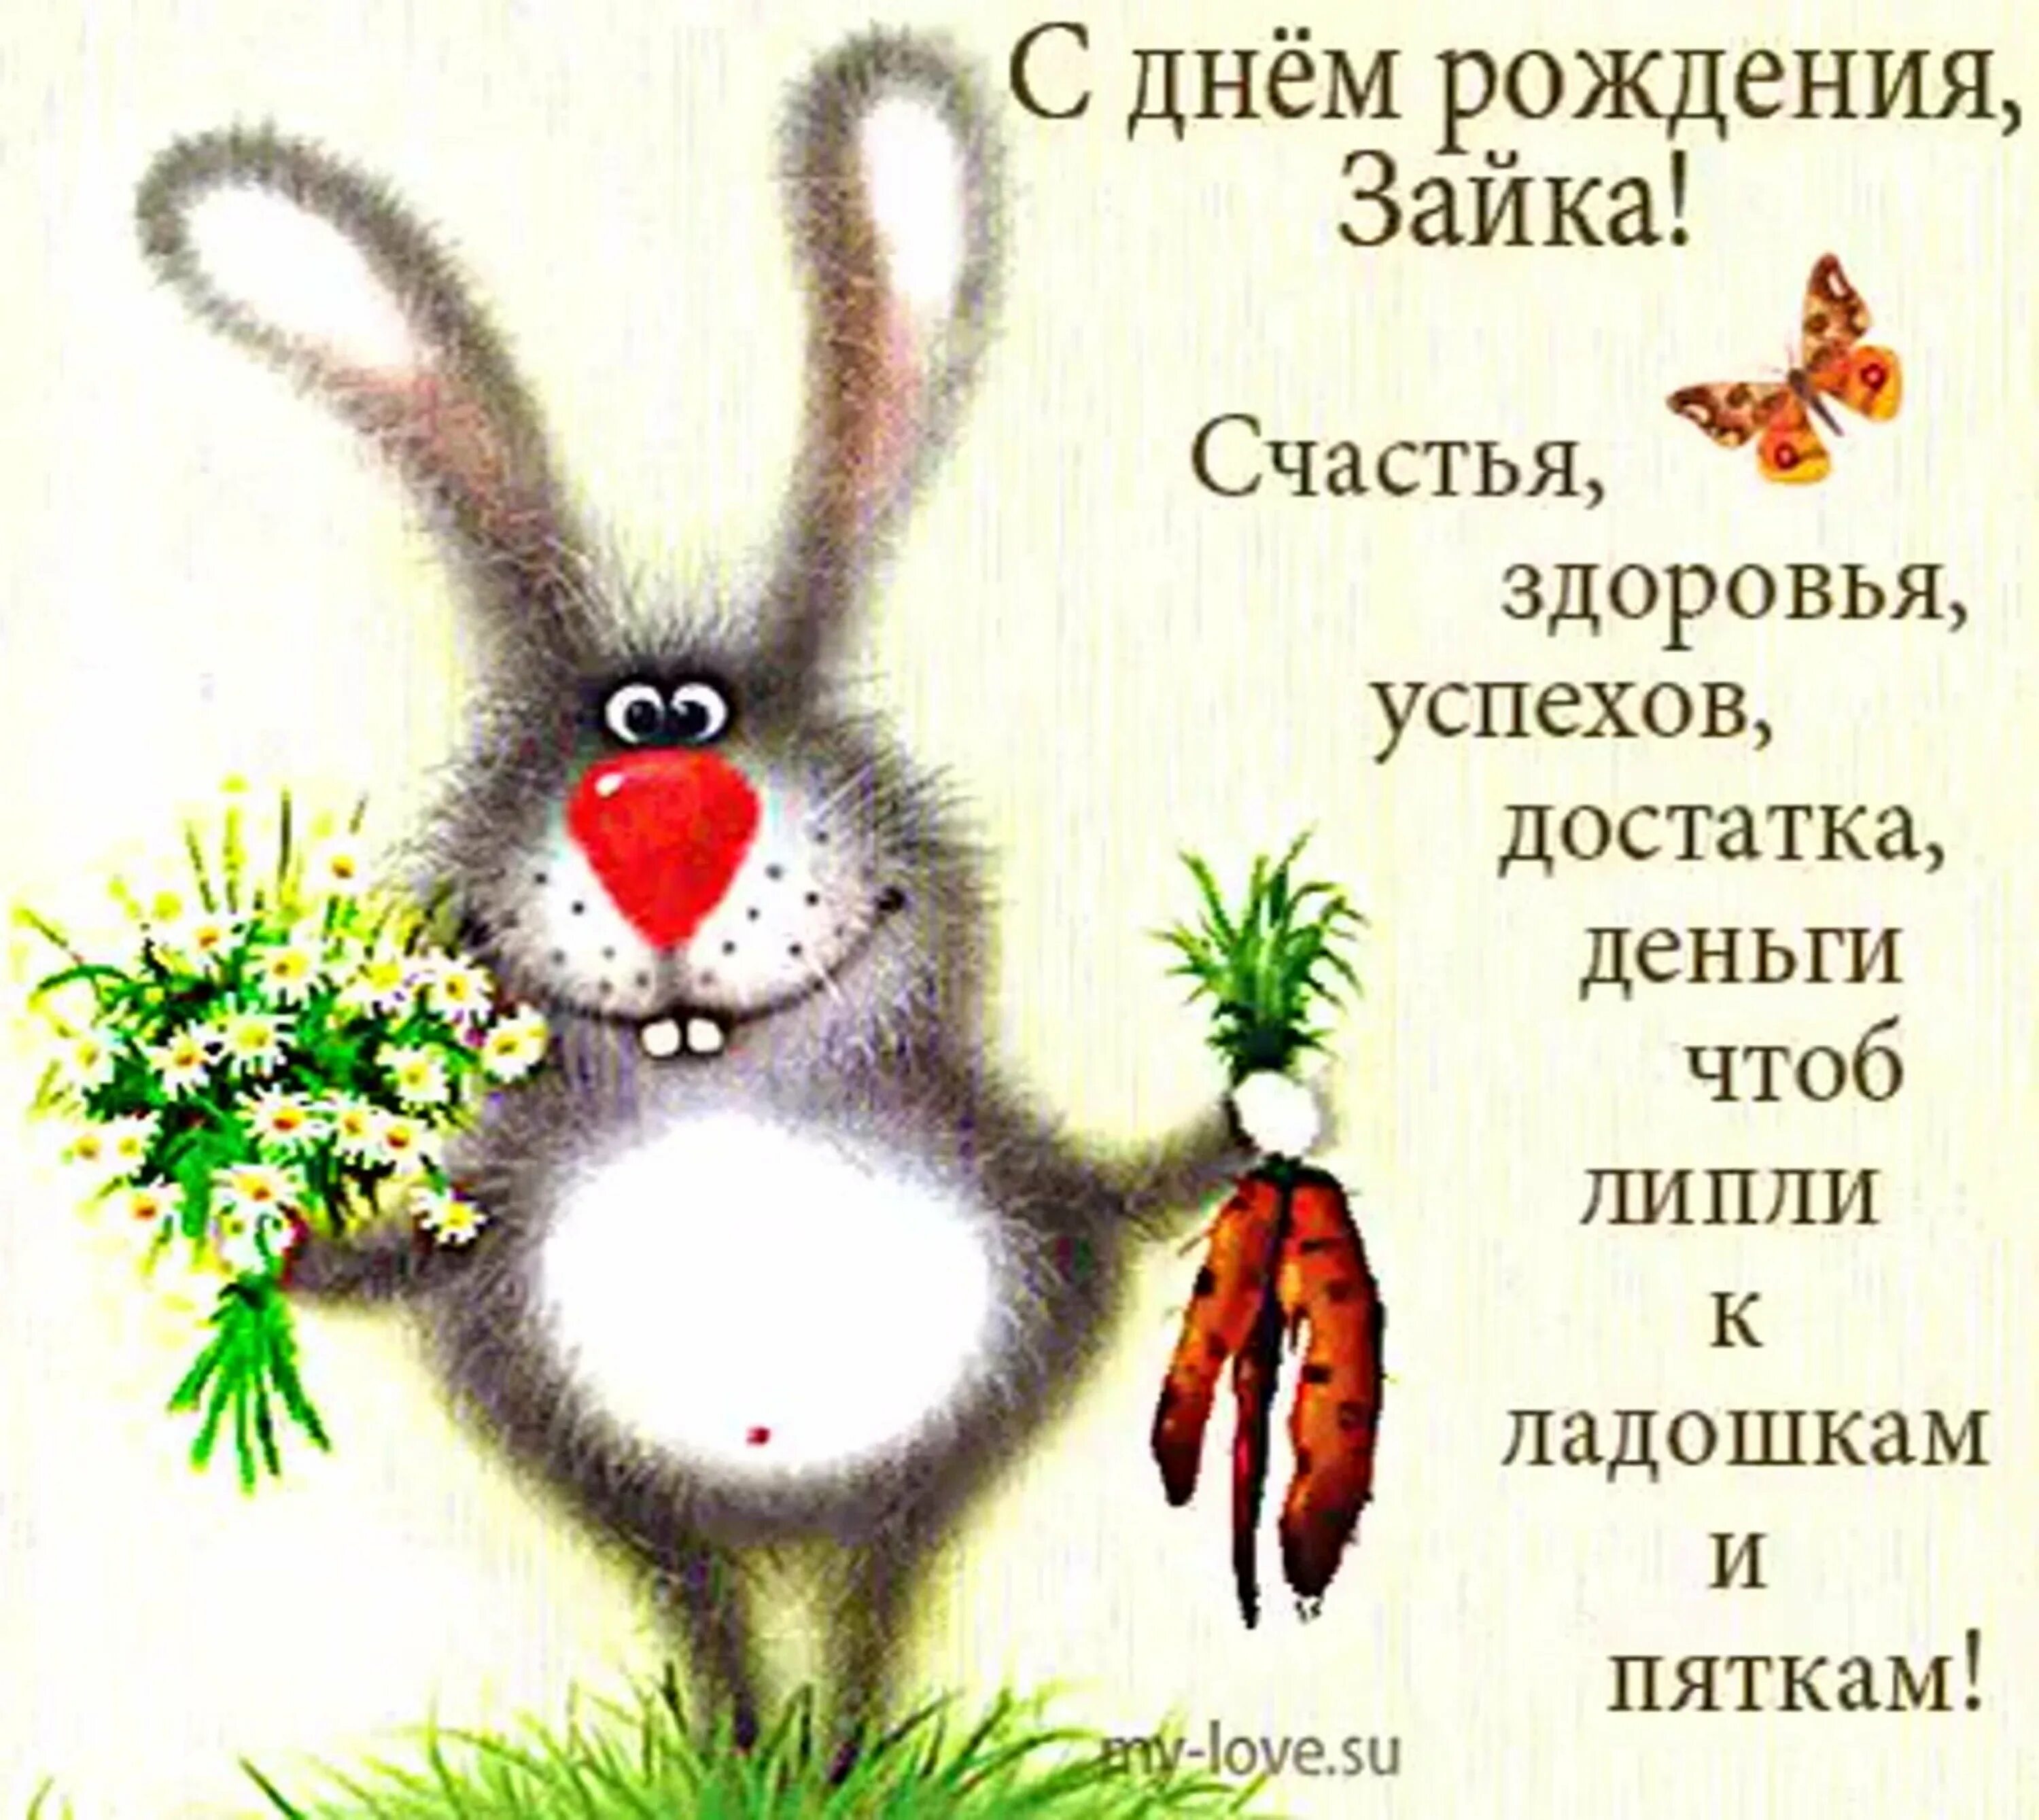 День рождения женщине зайка. День рождения зайчика. С днем рождения заяц. С днём рождения Зайка. С днем рождения зацчикз.